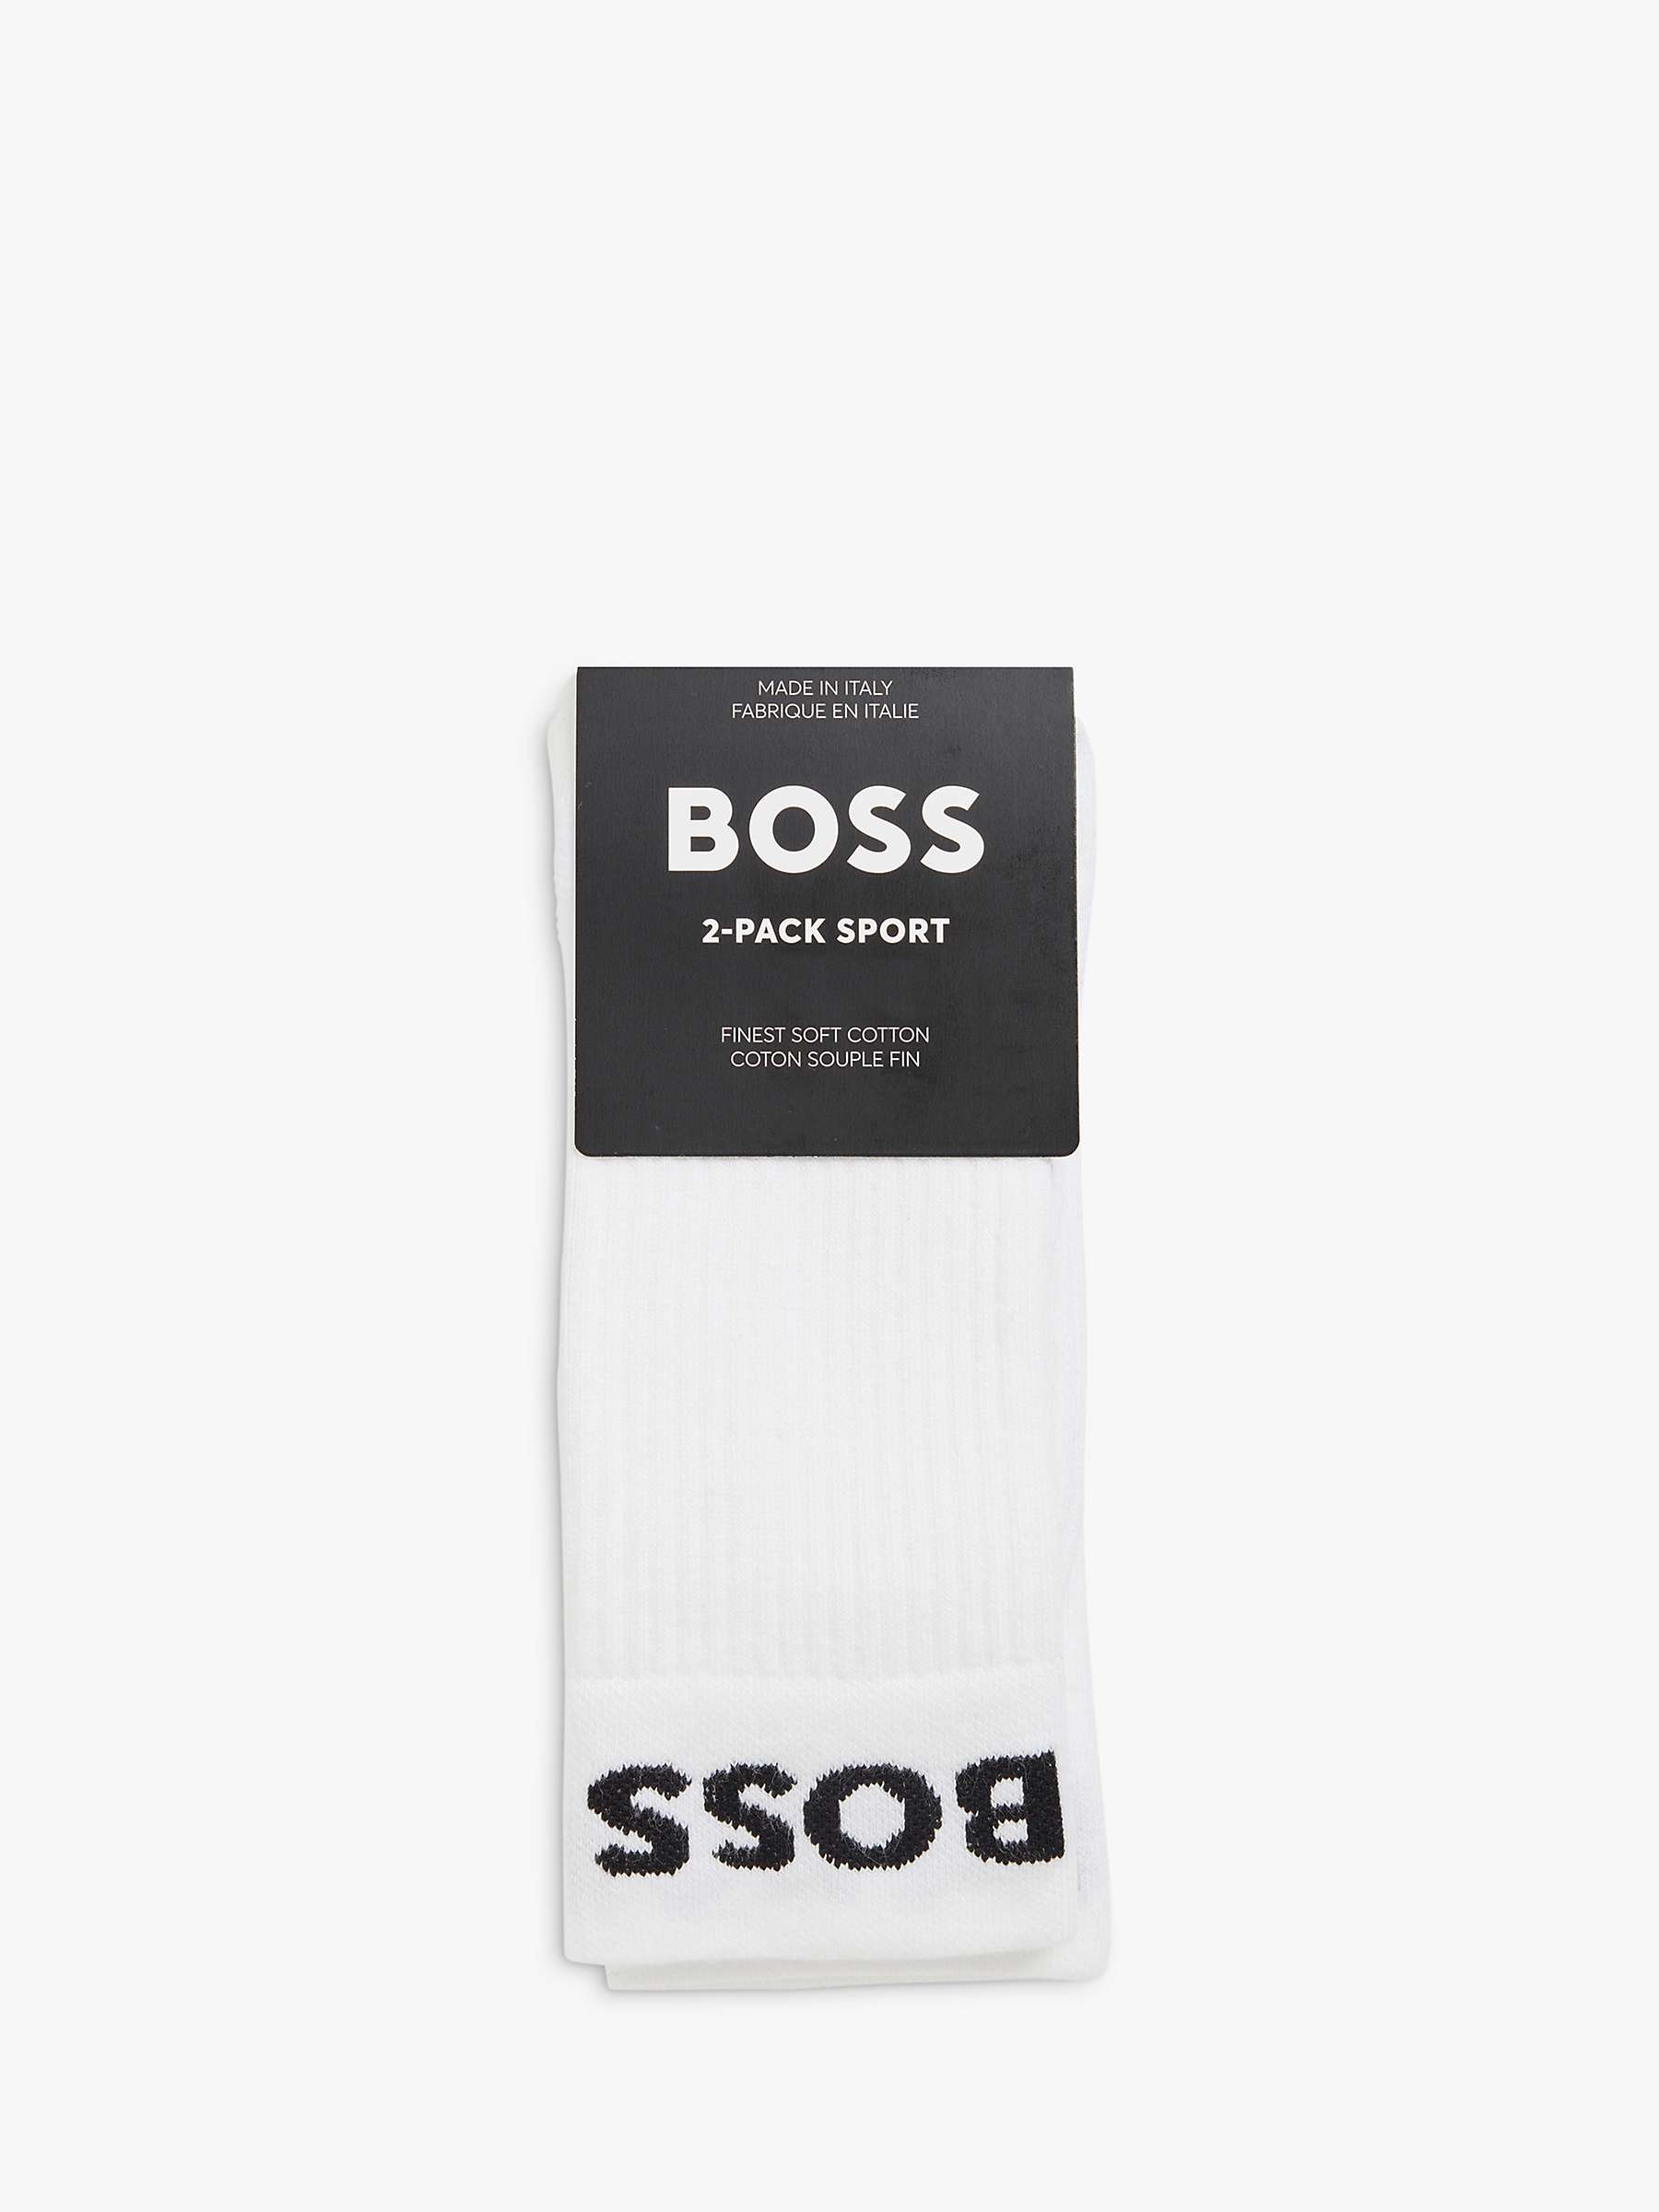 Buy HUGO BOSS Business Men's Socks Online at johnlewis.com